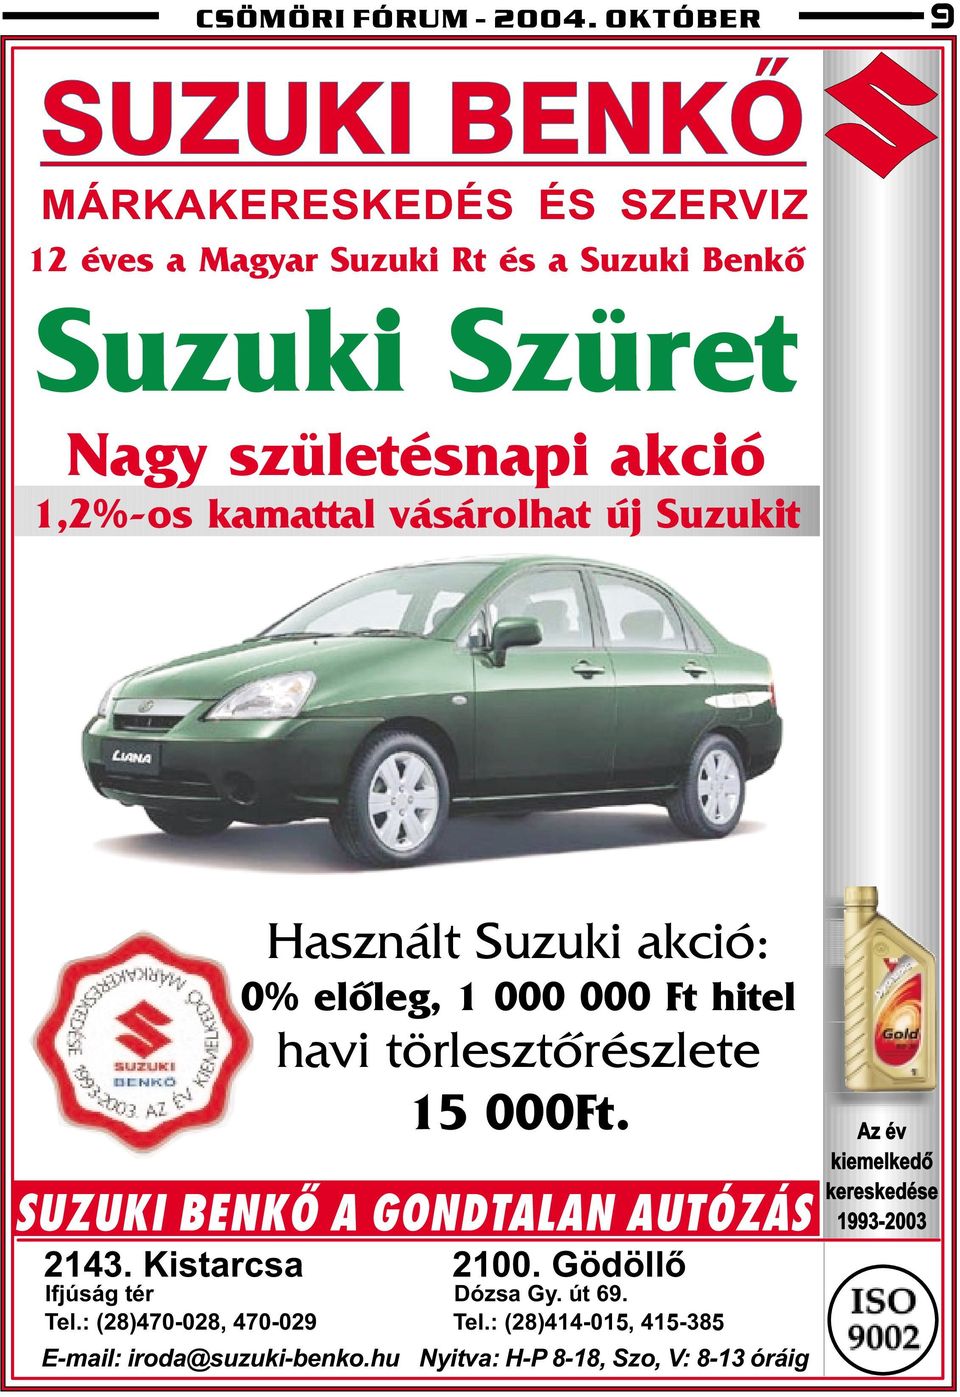 1,2%-os kamattal vásárolhat új Suzukit Használt Suzuki akció: 0% elõleg, 1 000 000 Ft hitel havi törlesztõrészlete 15 000Ft.